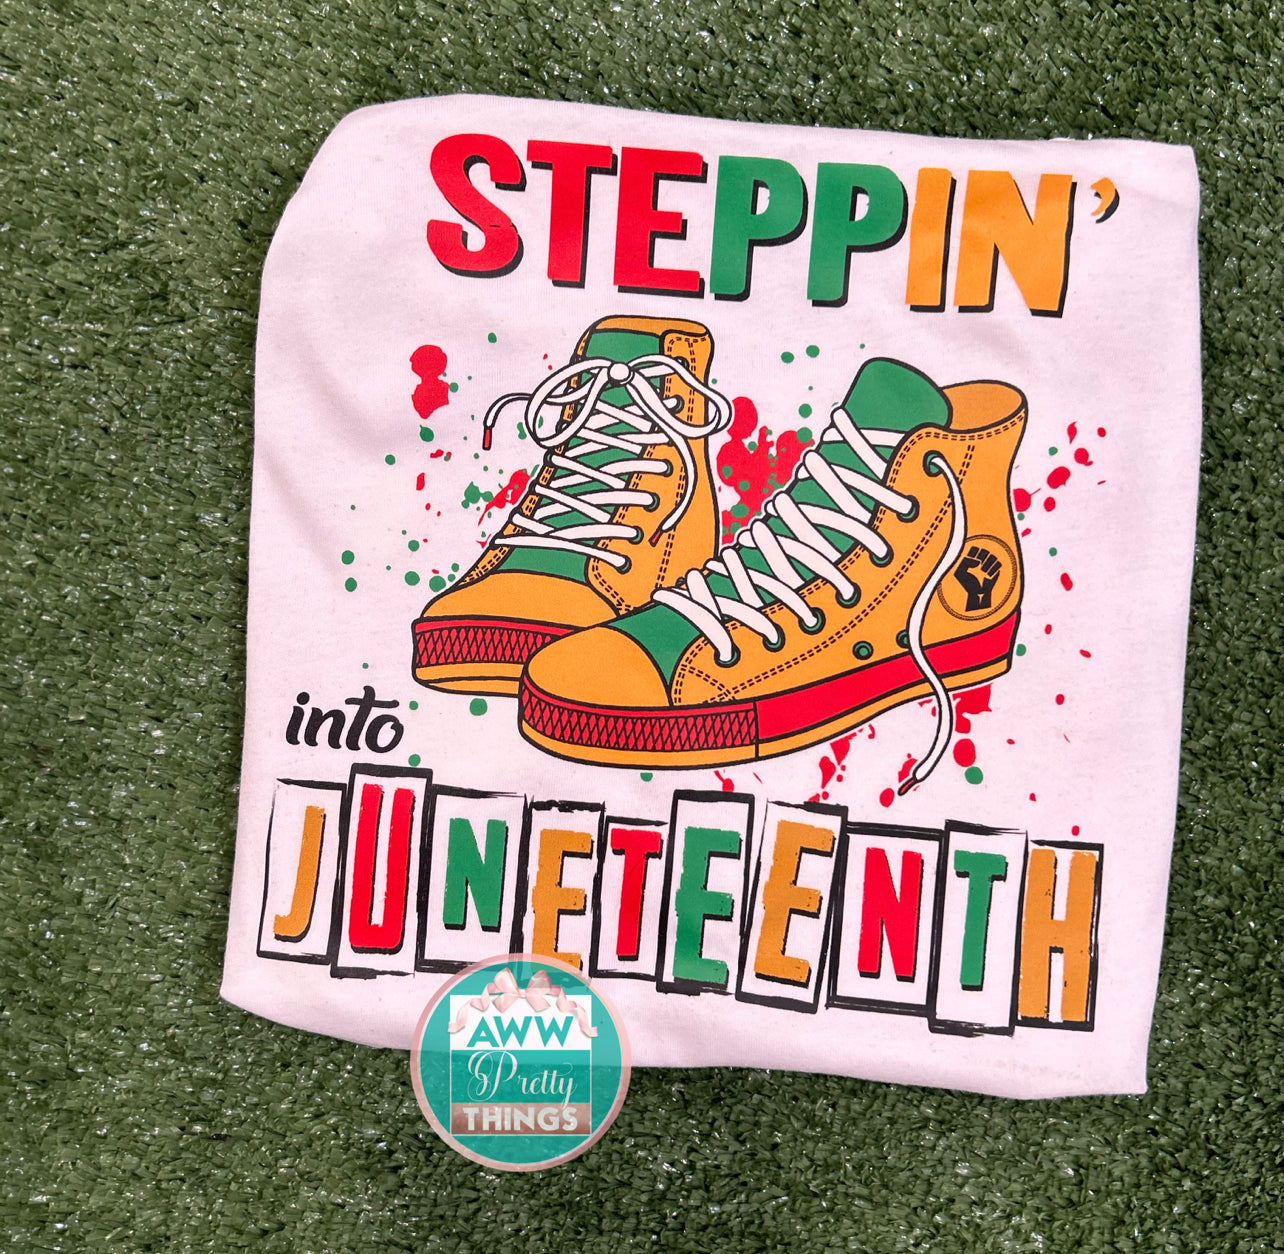 Steppin’ Into Juneteenth Shirt